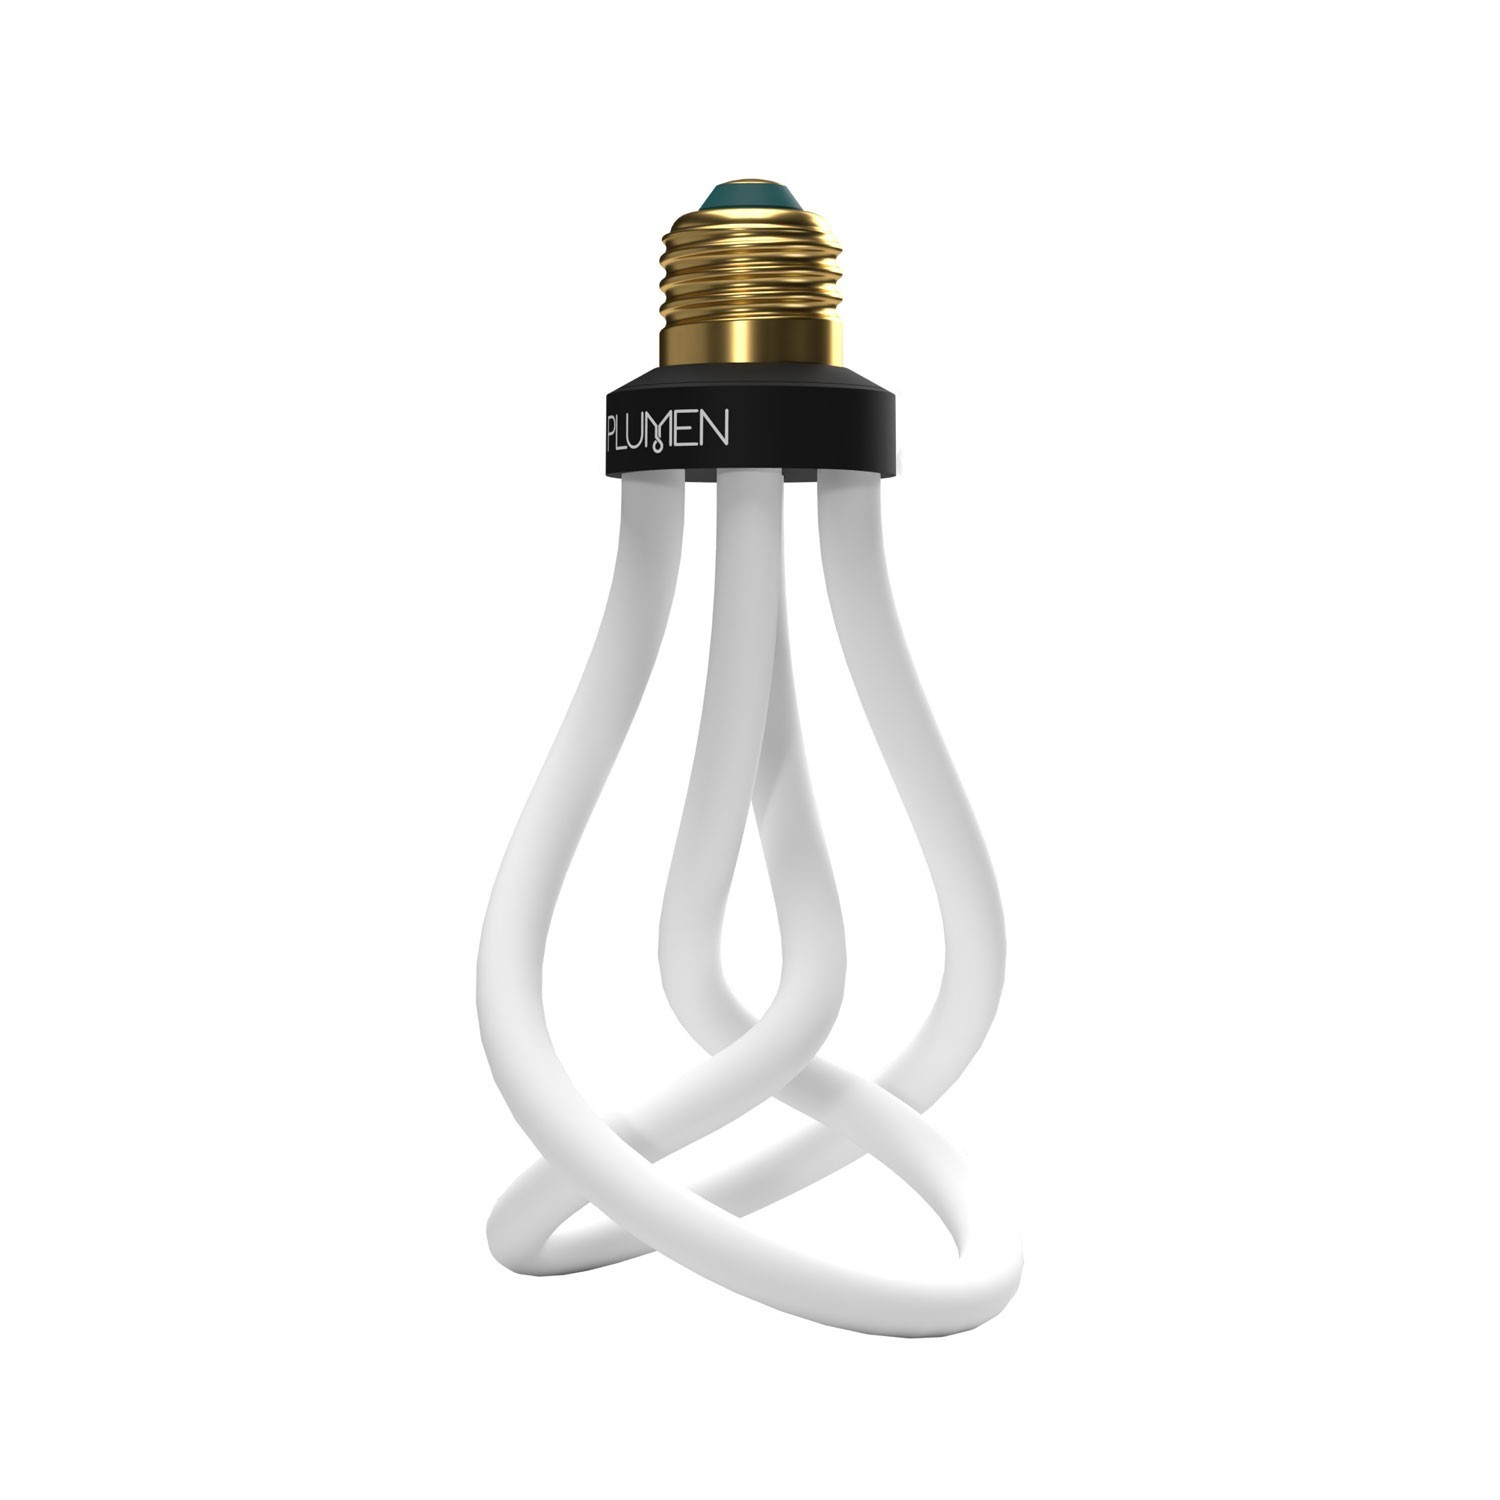 Plumen 001 Ampoule LED design